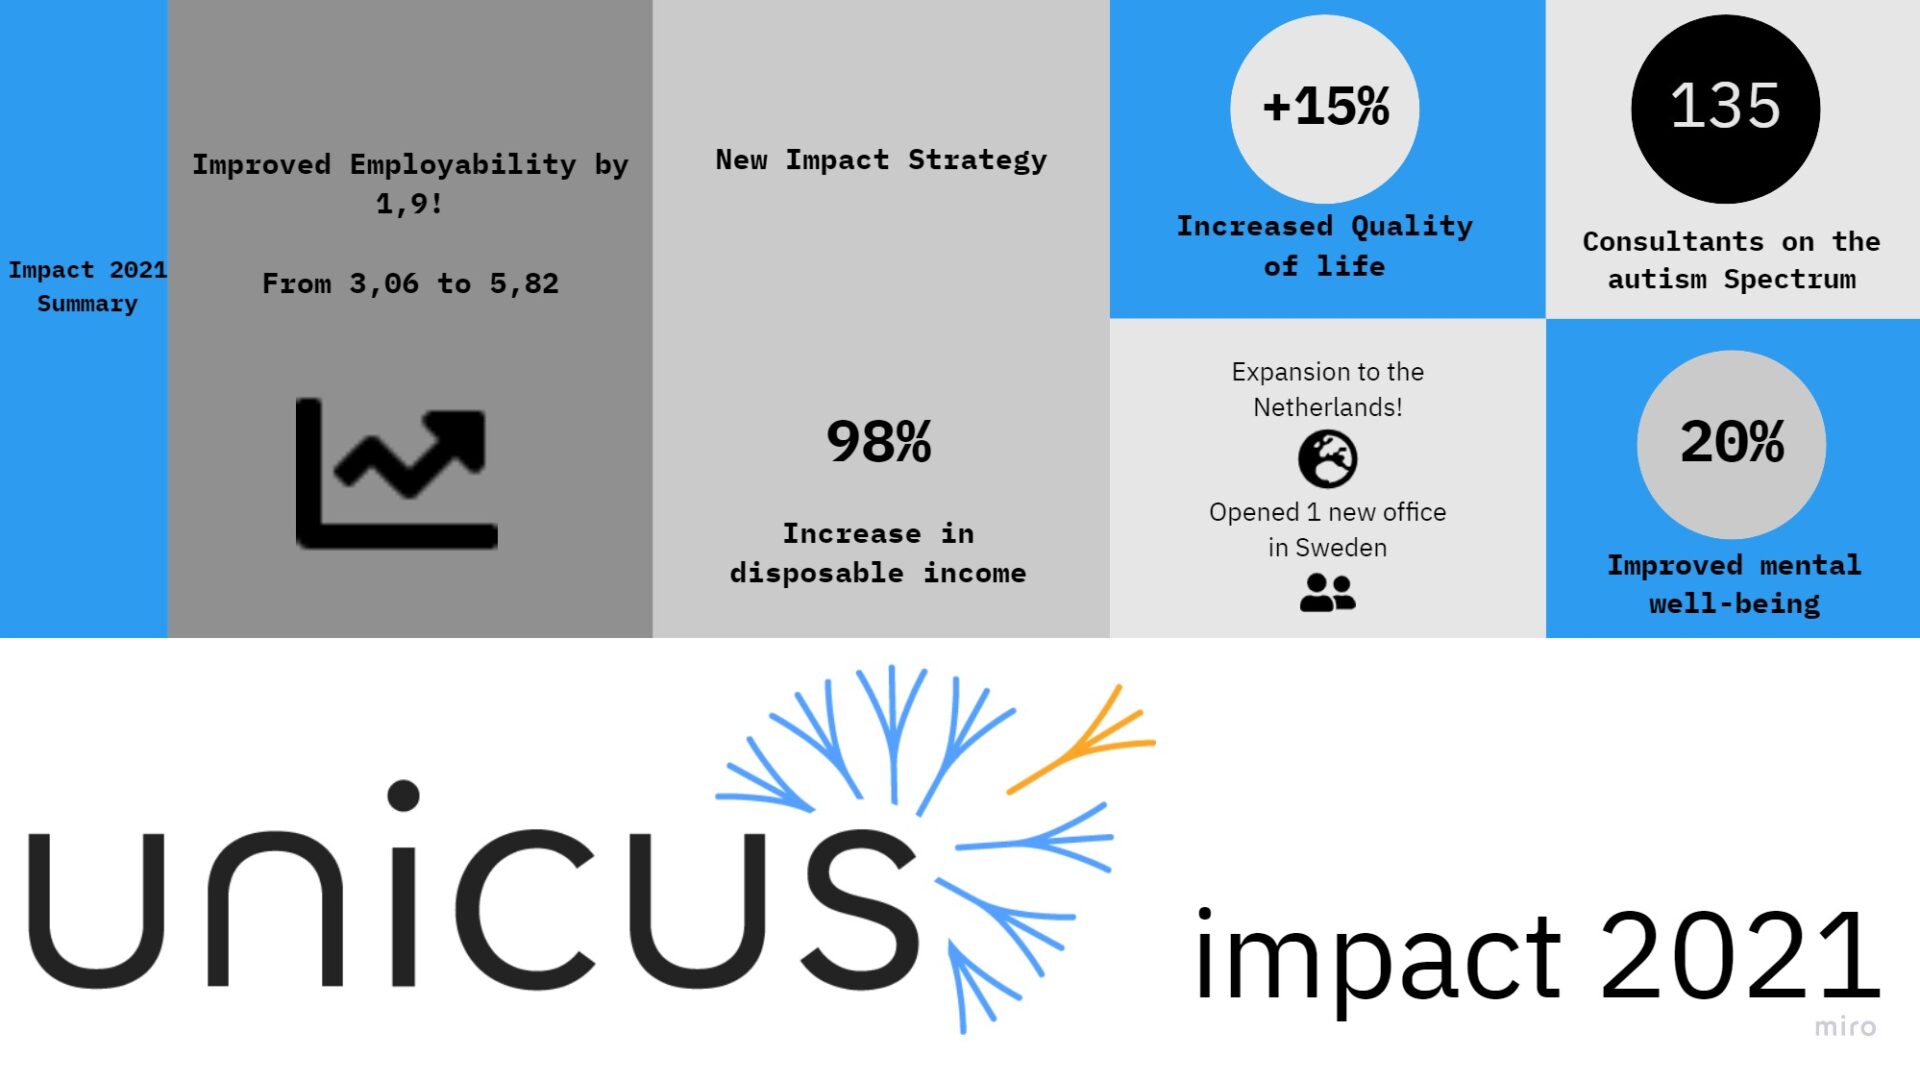 Unicus impact 2021